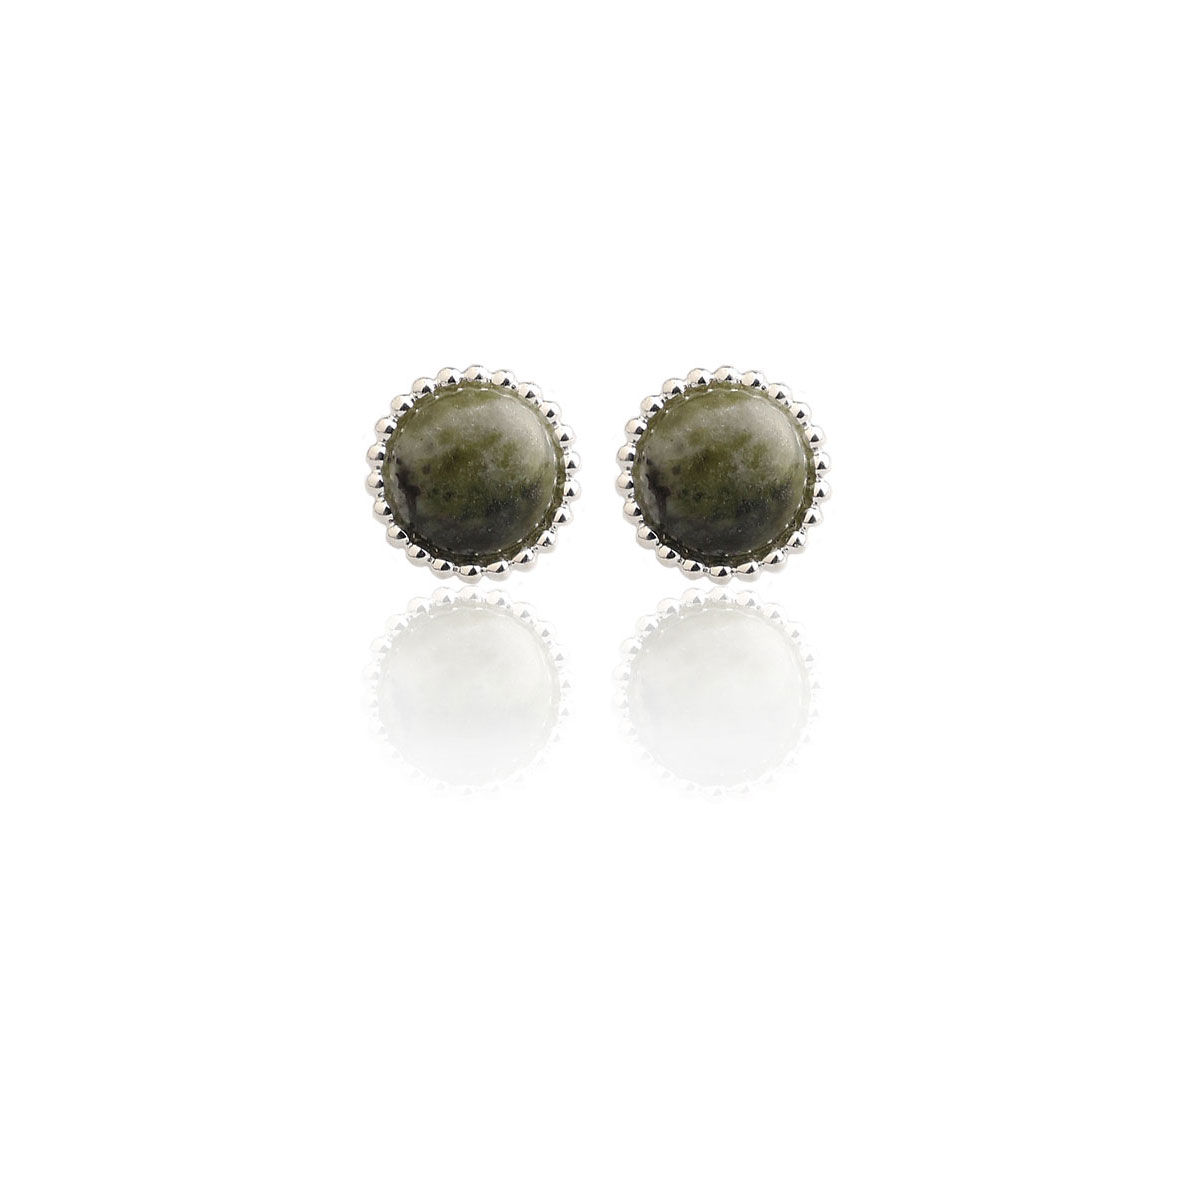 Cashs Ireland, Connemara Marble Button Earrings, Pair